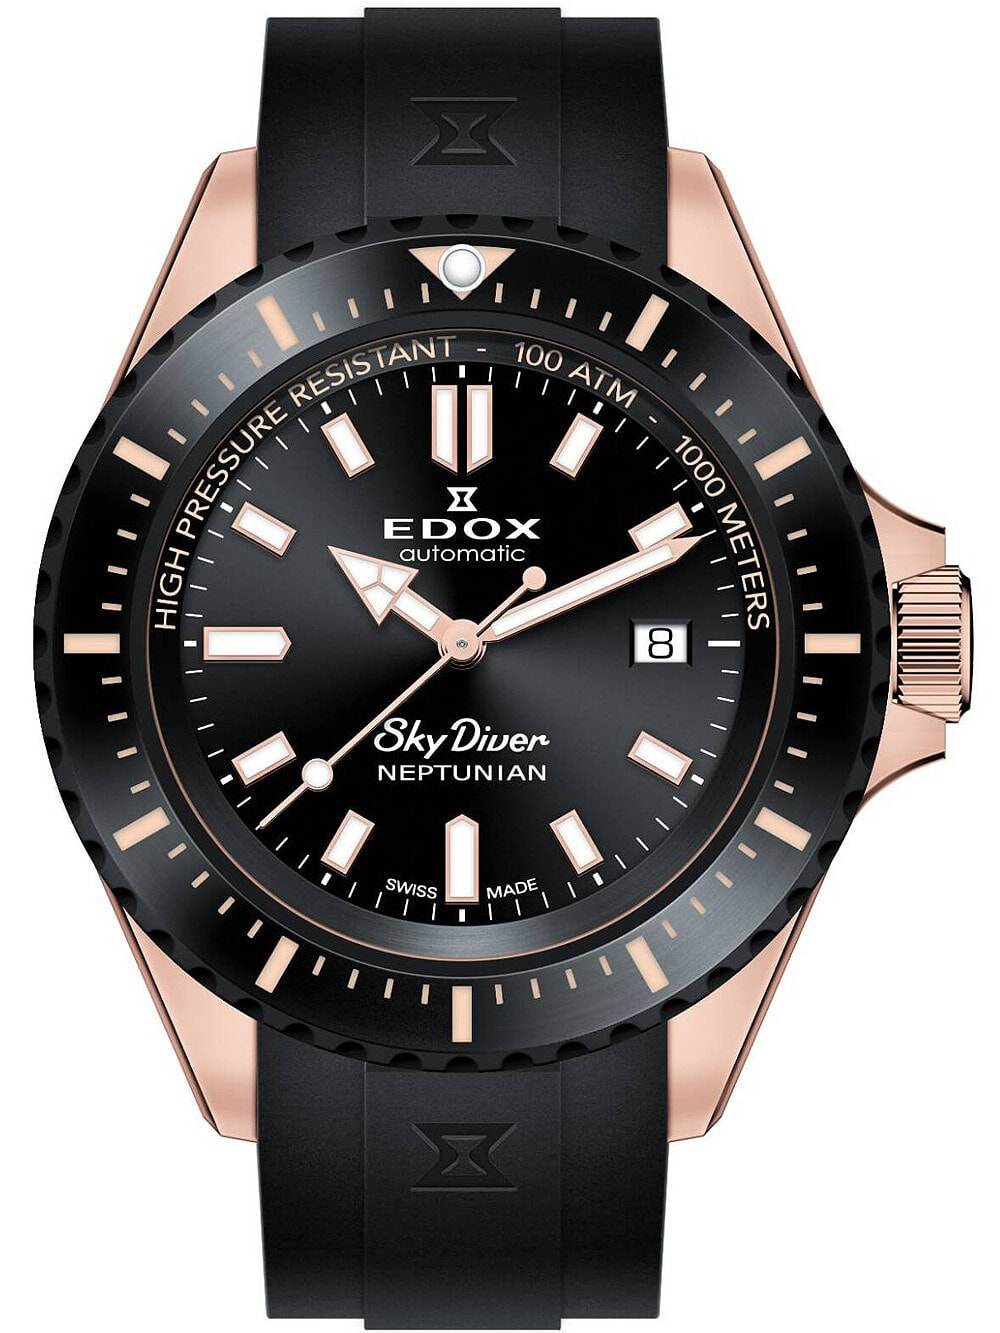 Мужские наручные часы с черным силиконовым ремешком Edox 80120-37RNNCA-NIR Skydiver Neptunian 44mm 100ATM